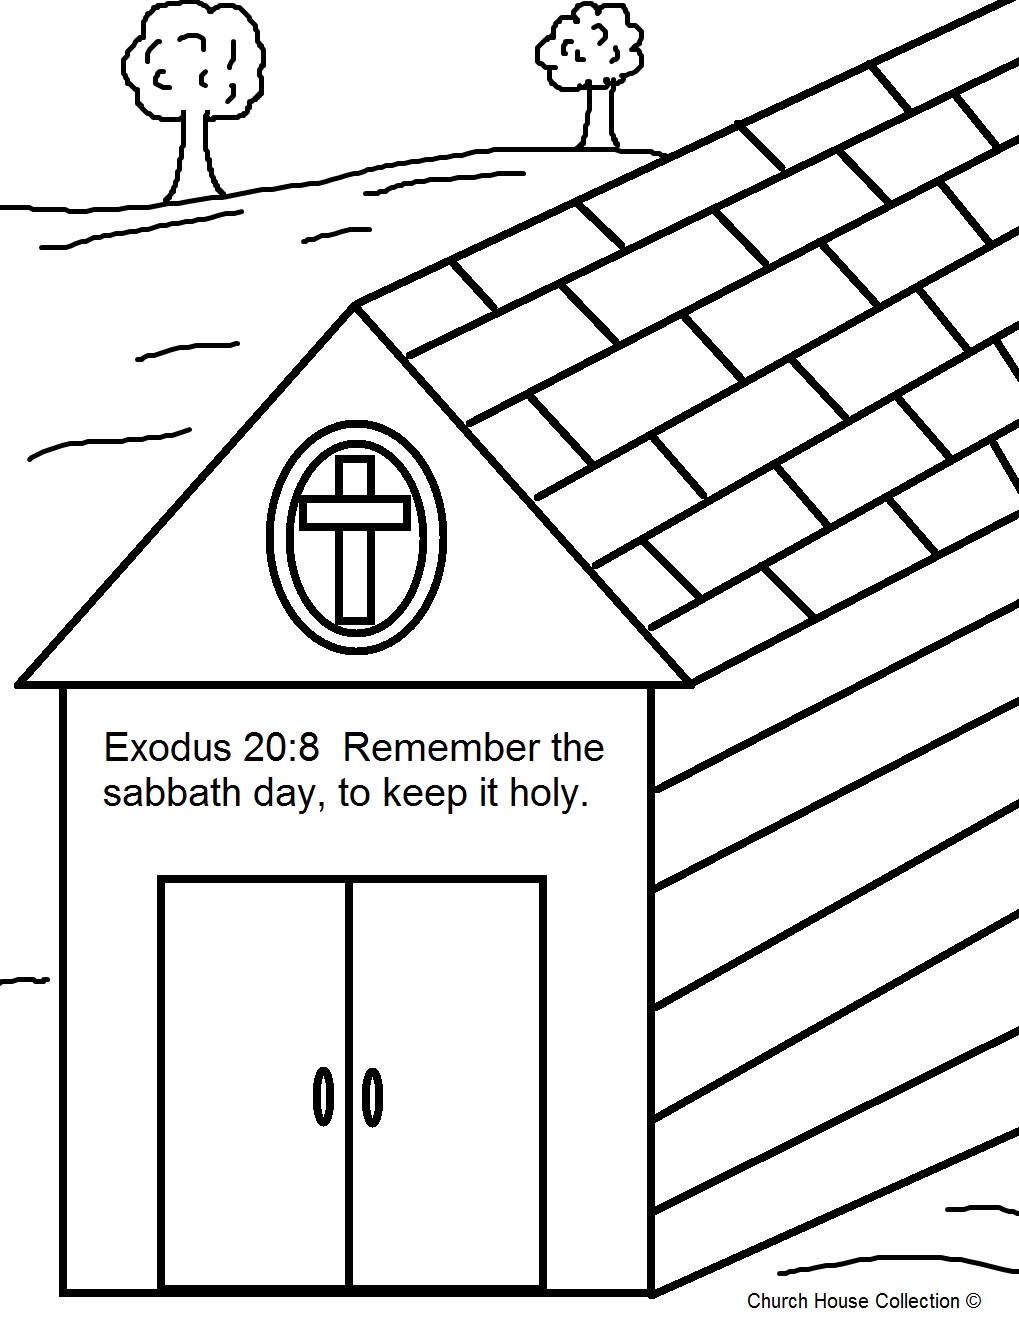 churchhousecollection